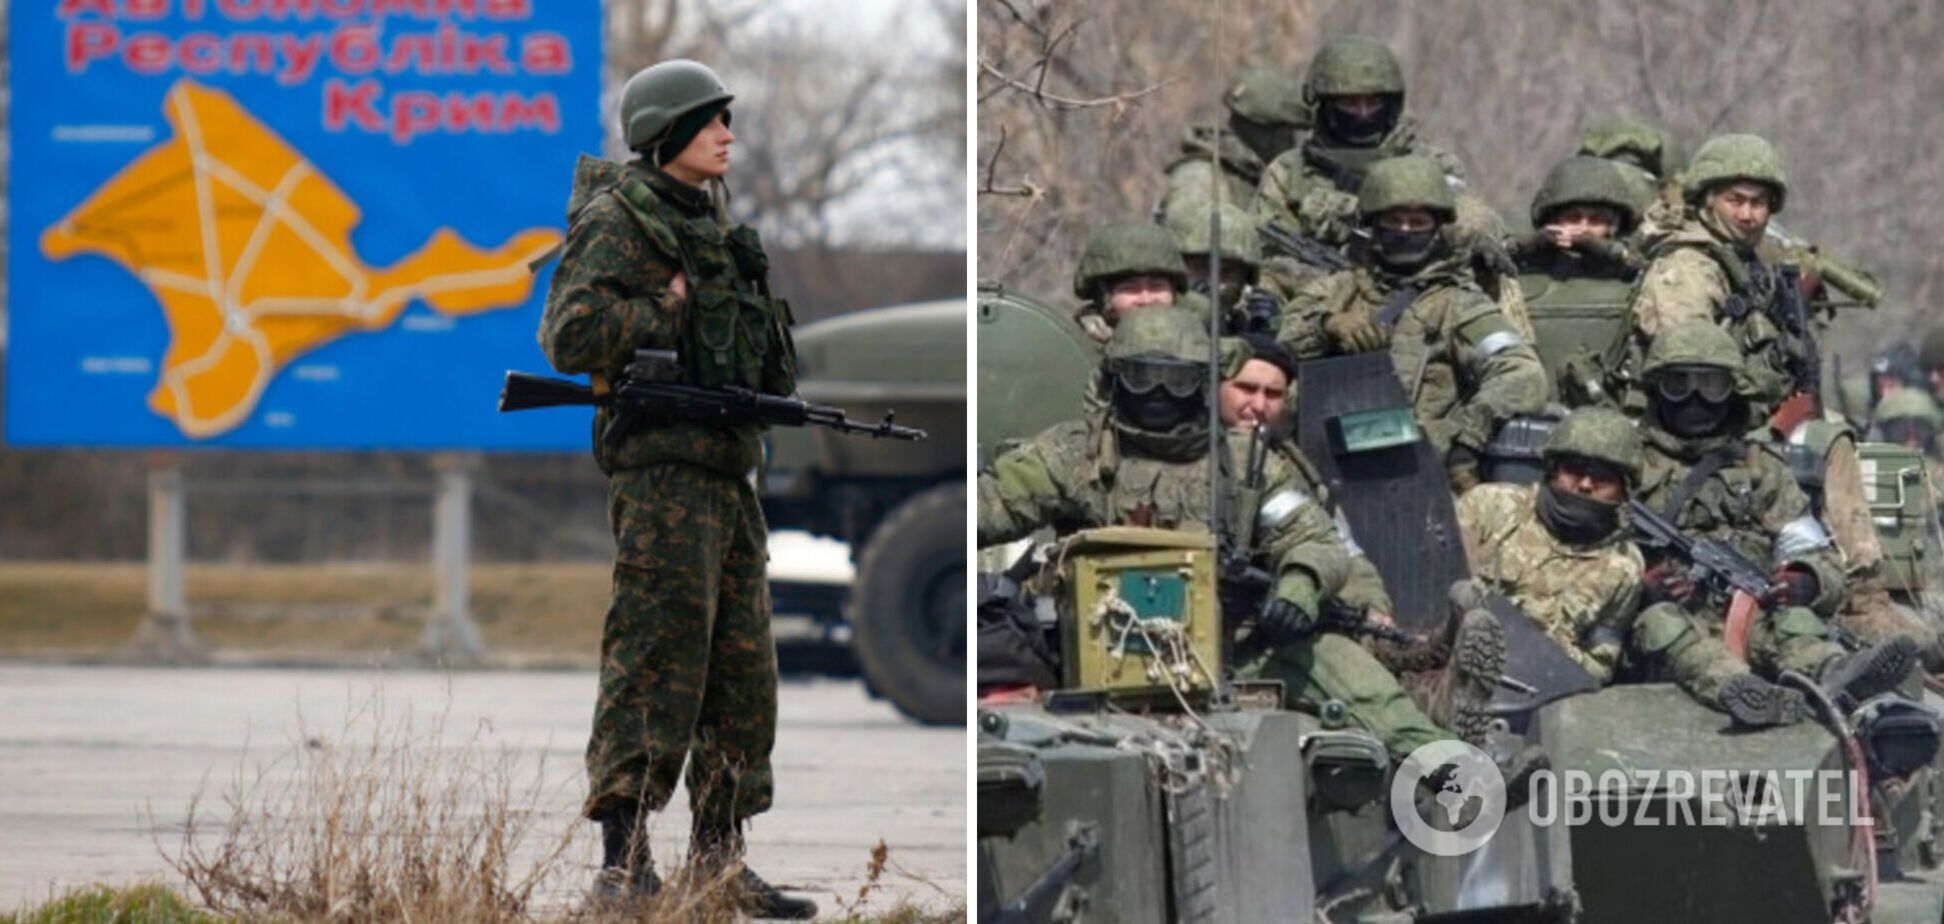 РФ перебрасывает большое количество войск на территорию оккупированного Крыма, – Скибицкий